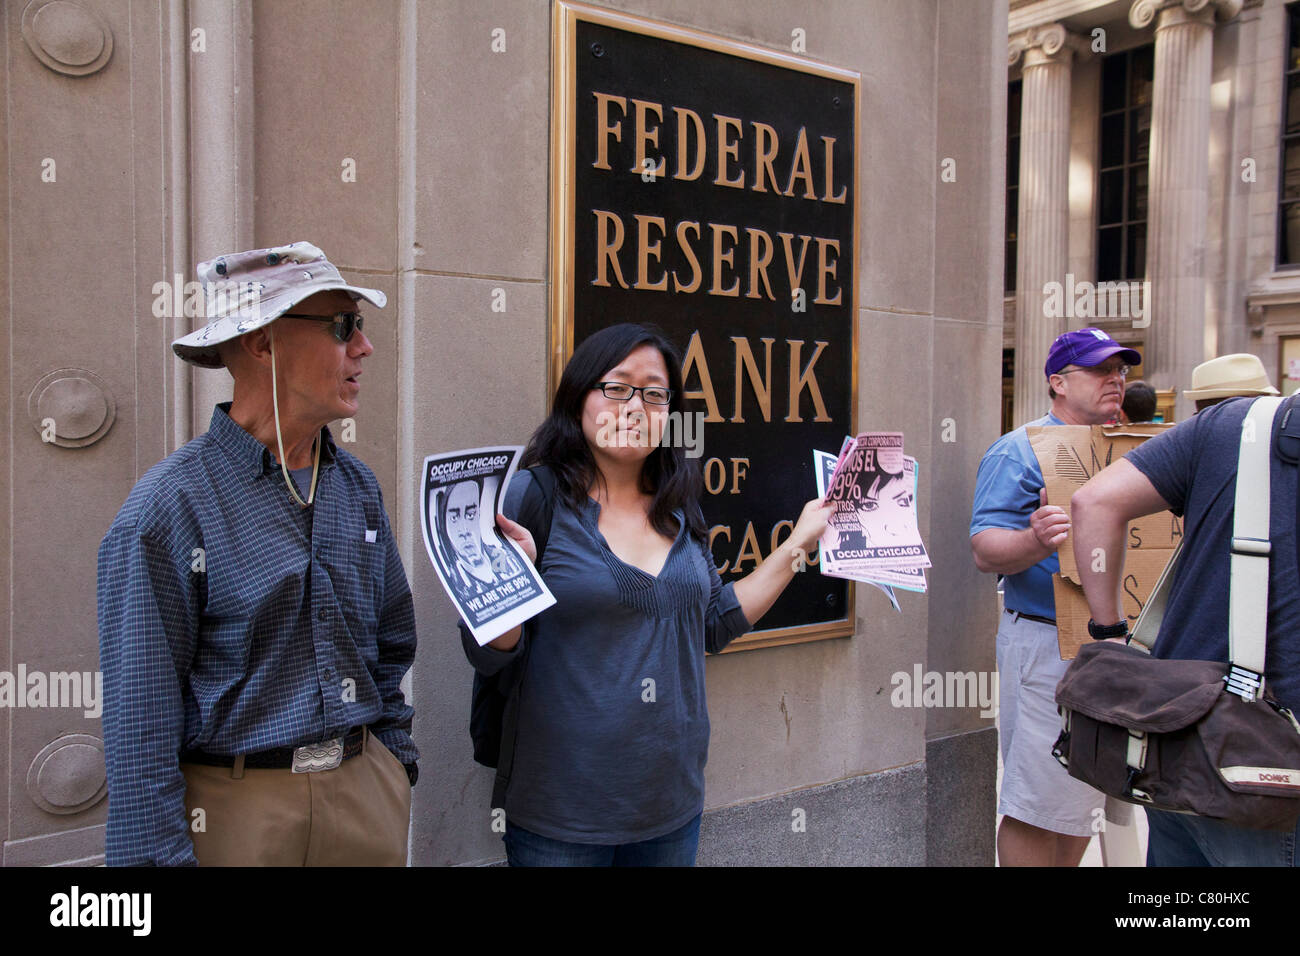 Manifestants devant la Banque fédérale de réserve. Chicago, Illinois. Banque D'Images